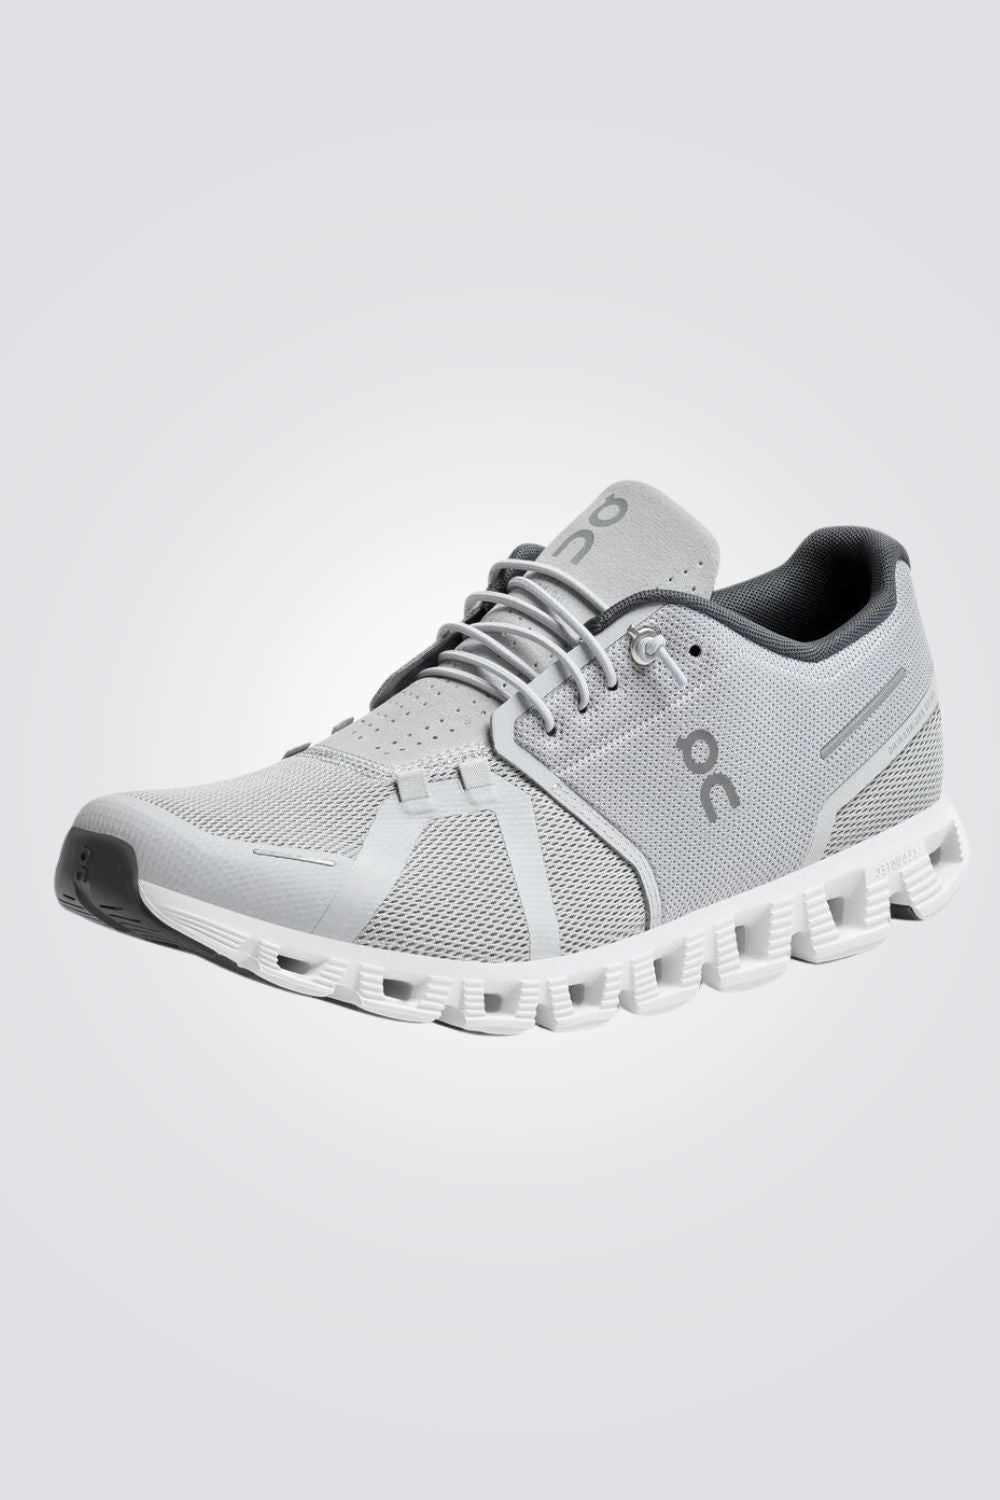 נעלי ספורט לגברים Cloud 5 בצבע אפור ולבן